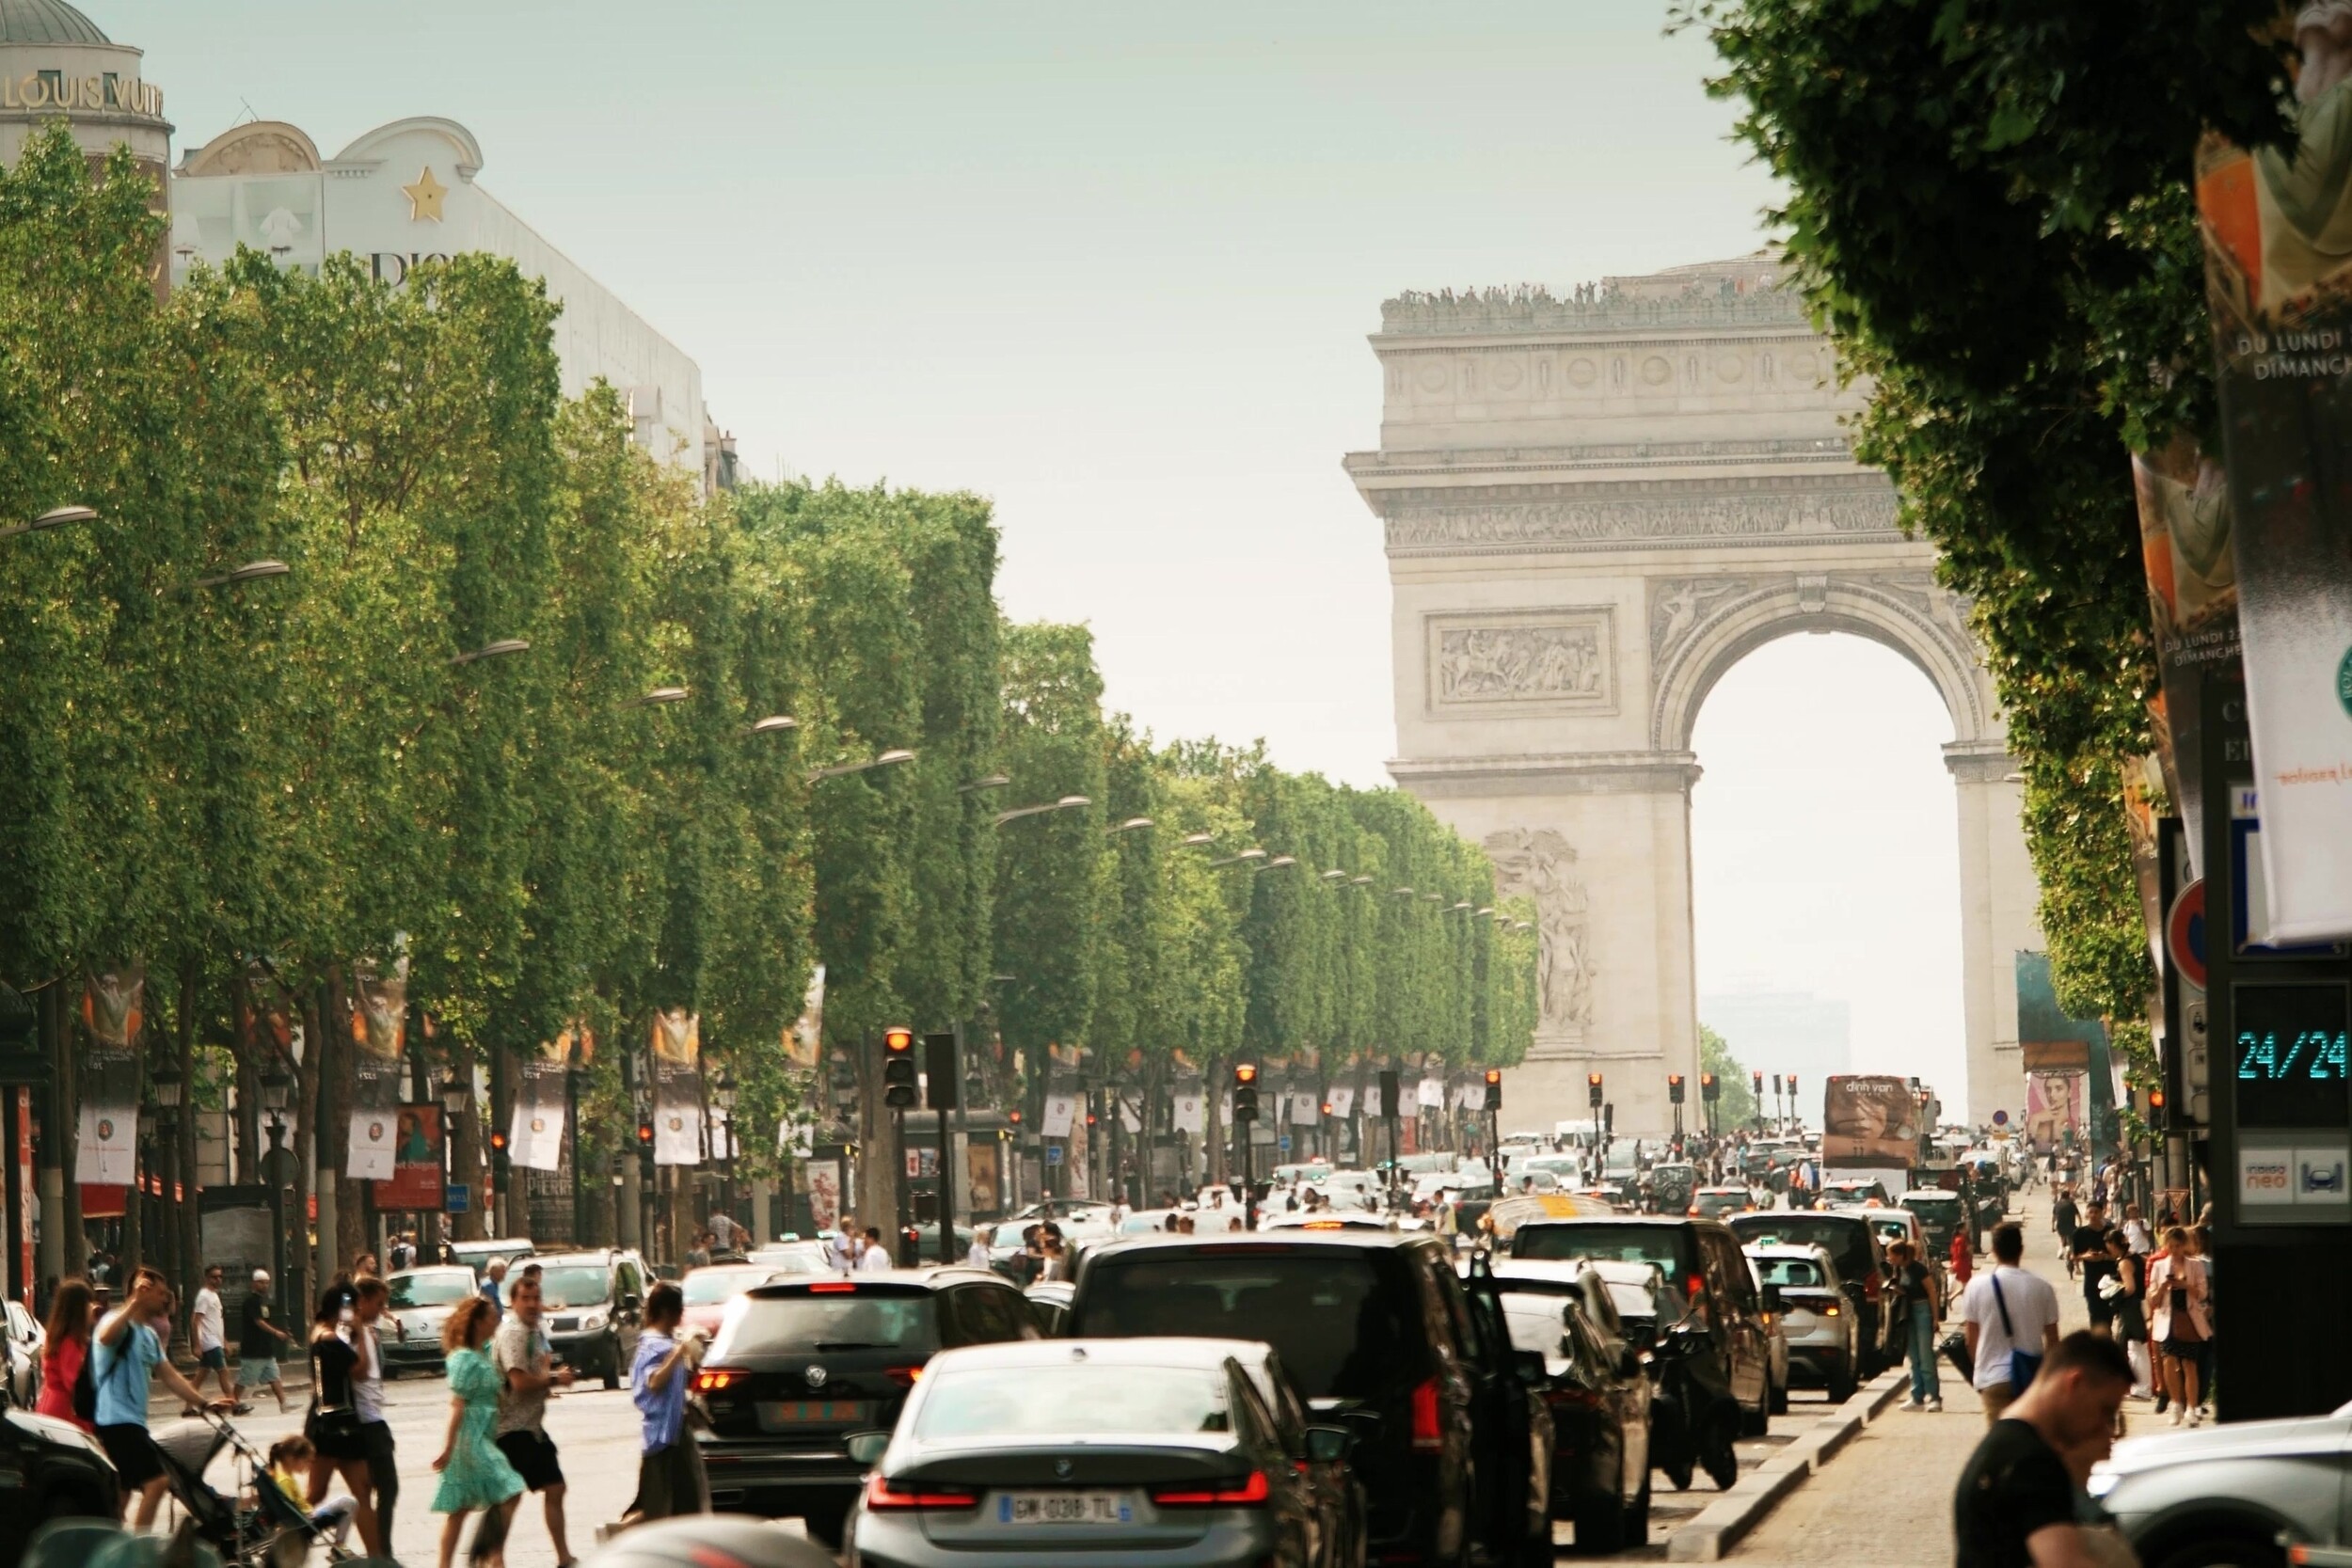 Mécontent des mesures prises contre la pollution de l'air, le Conseil d'État va faire payer des millions d'euros à la France